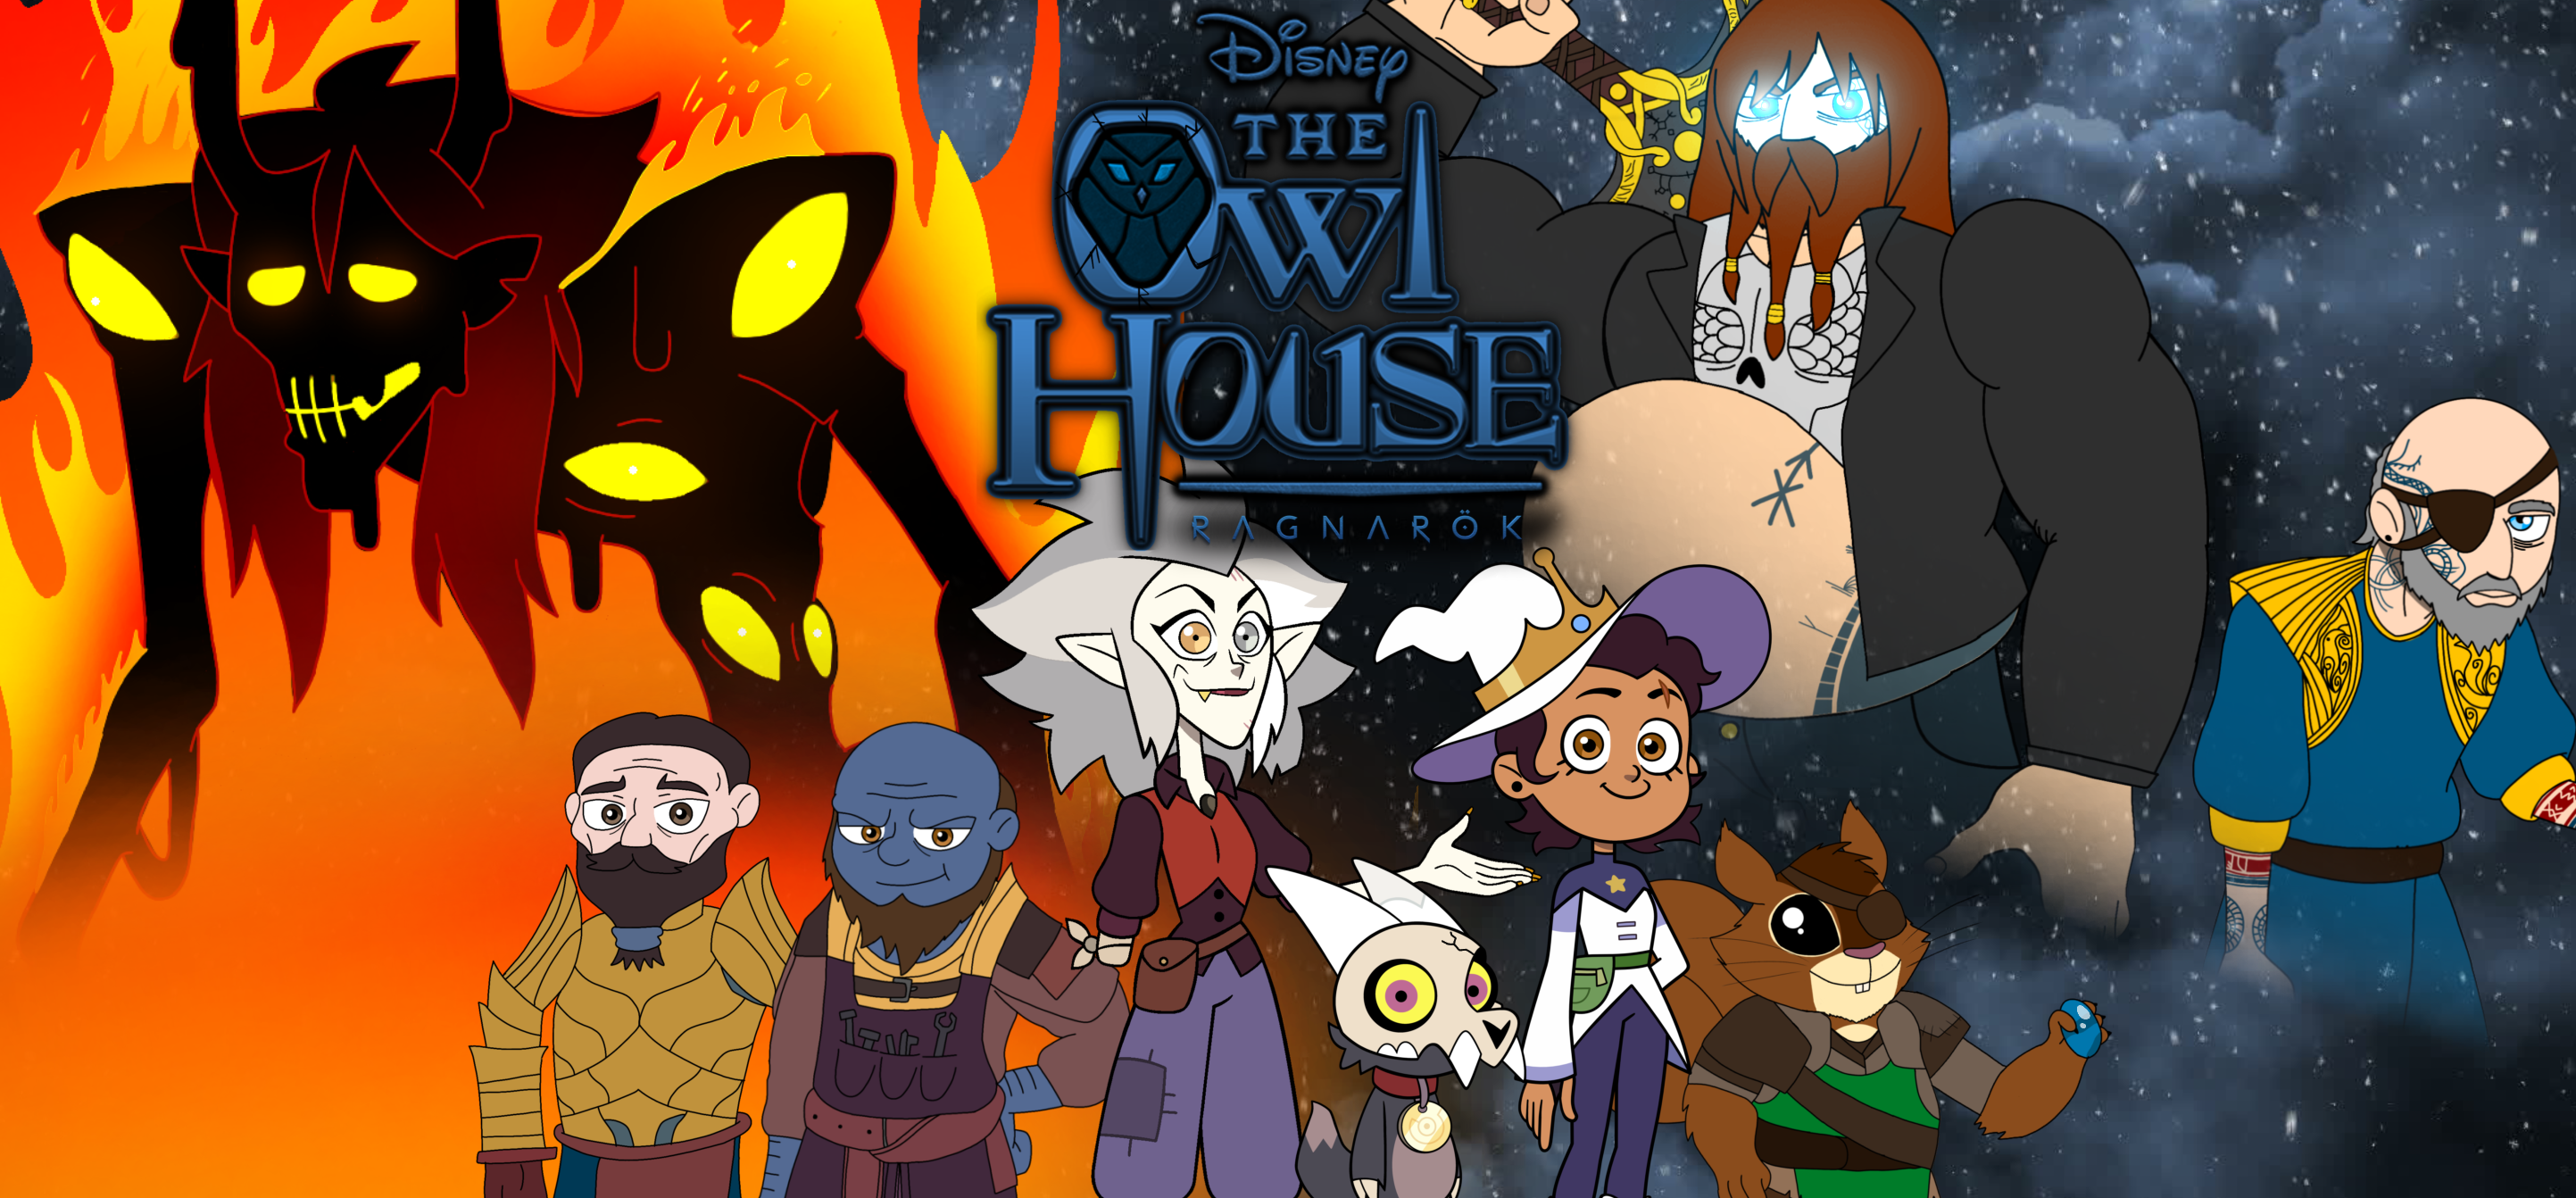 The owl house